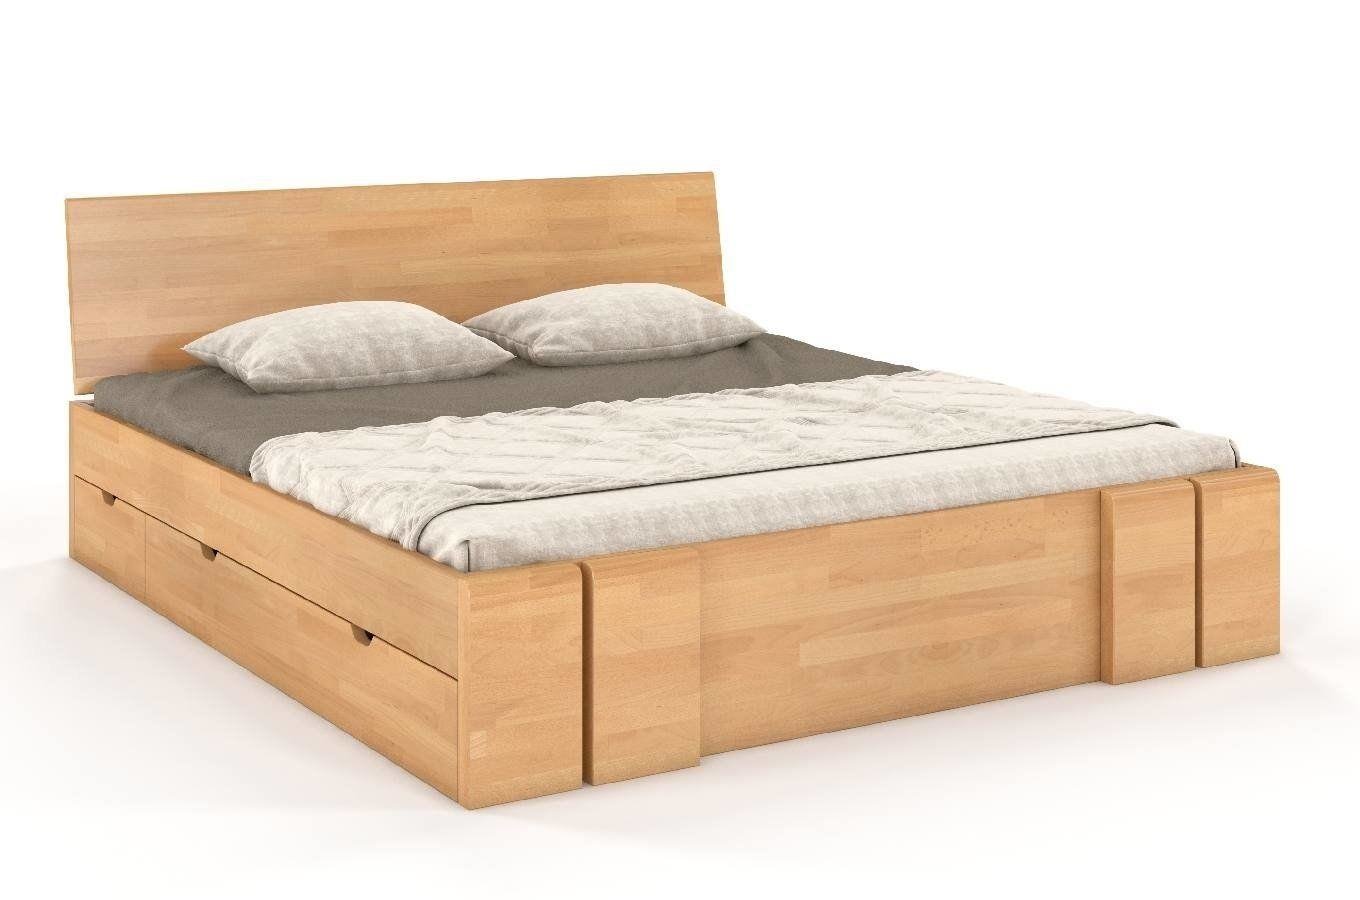 Łóżko drewniane bukowe z szufladami Skandica VESTRE Maxi & DR / 140x20 cm, kolor naturalny